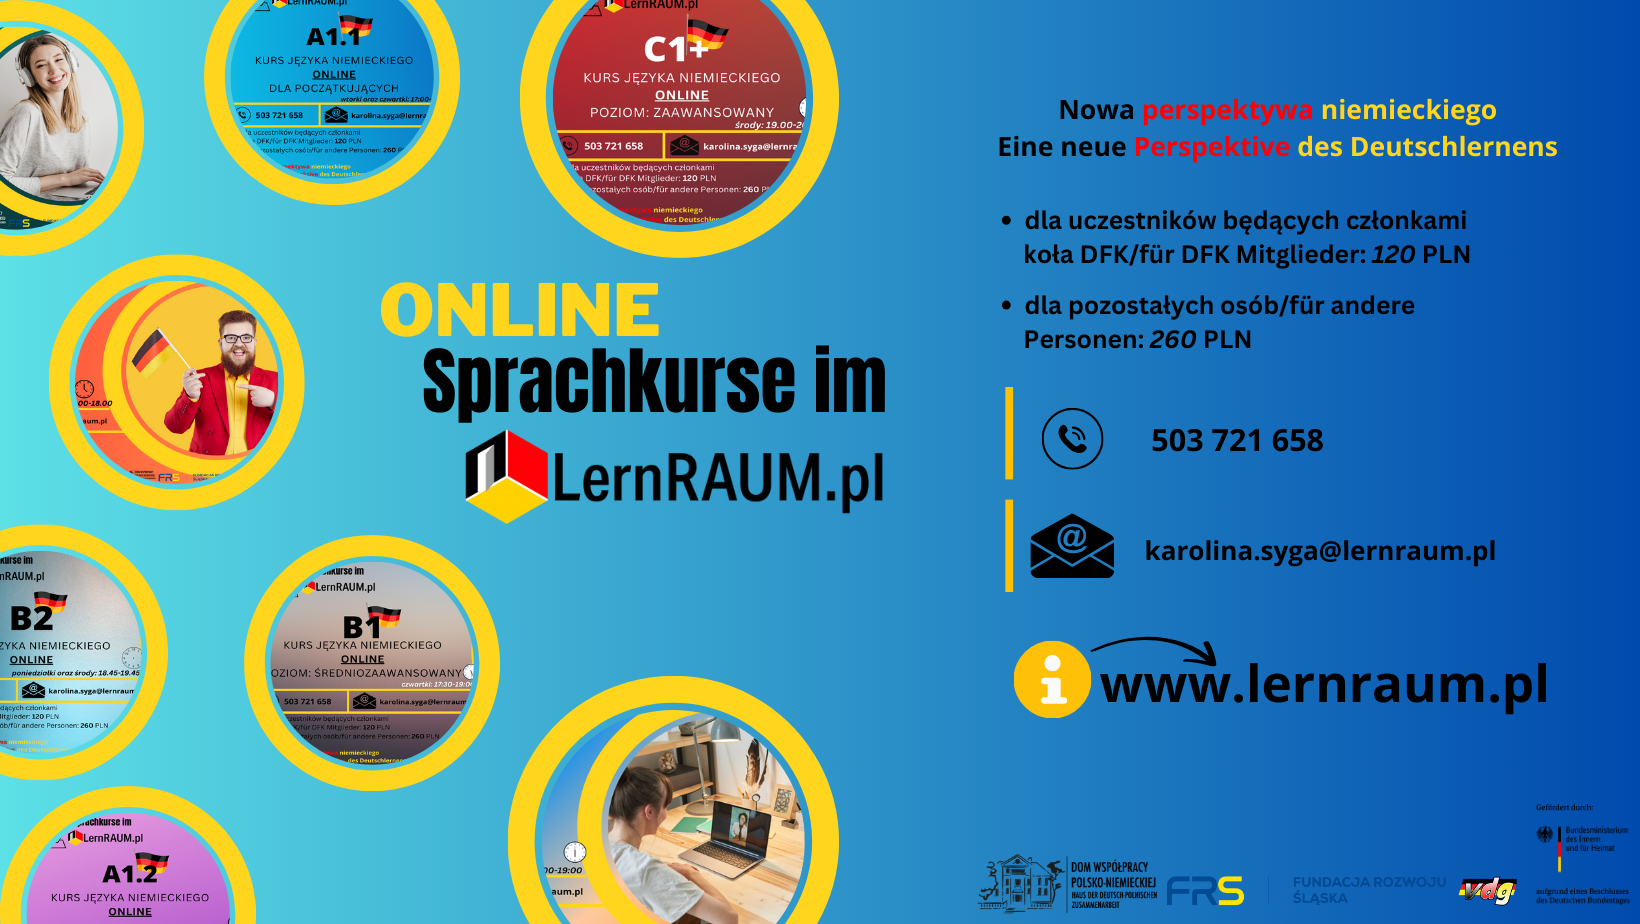 Kursy języka niemieckiego ONLINE w ramach projektu LernRAUM.pl